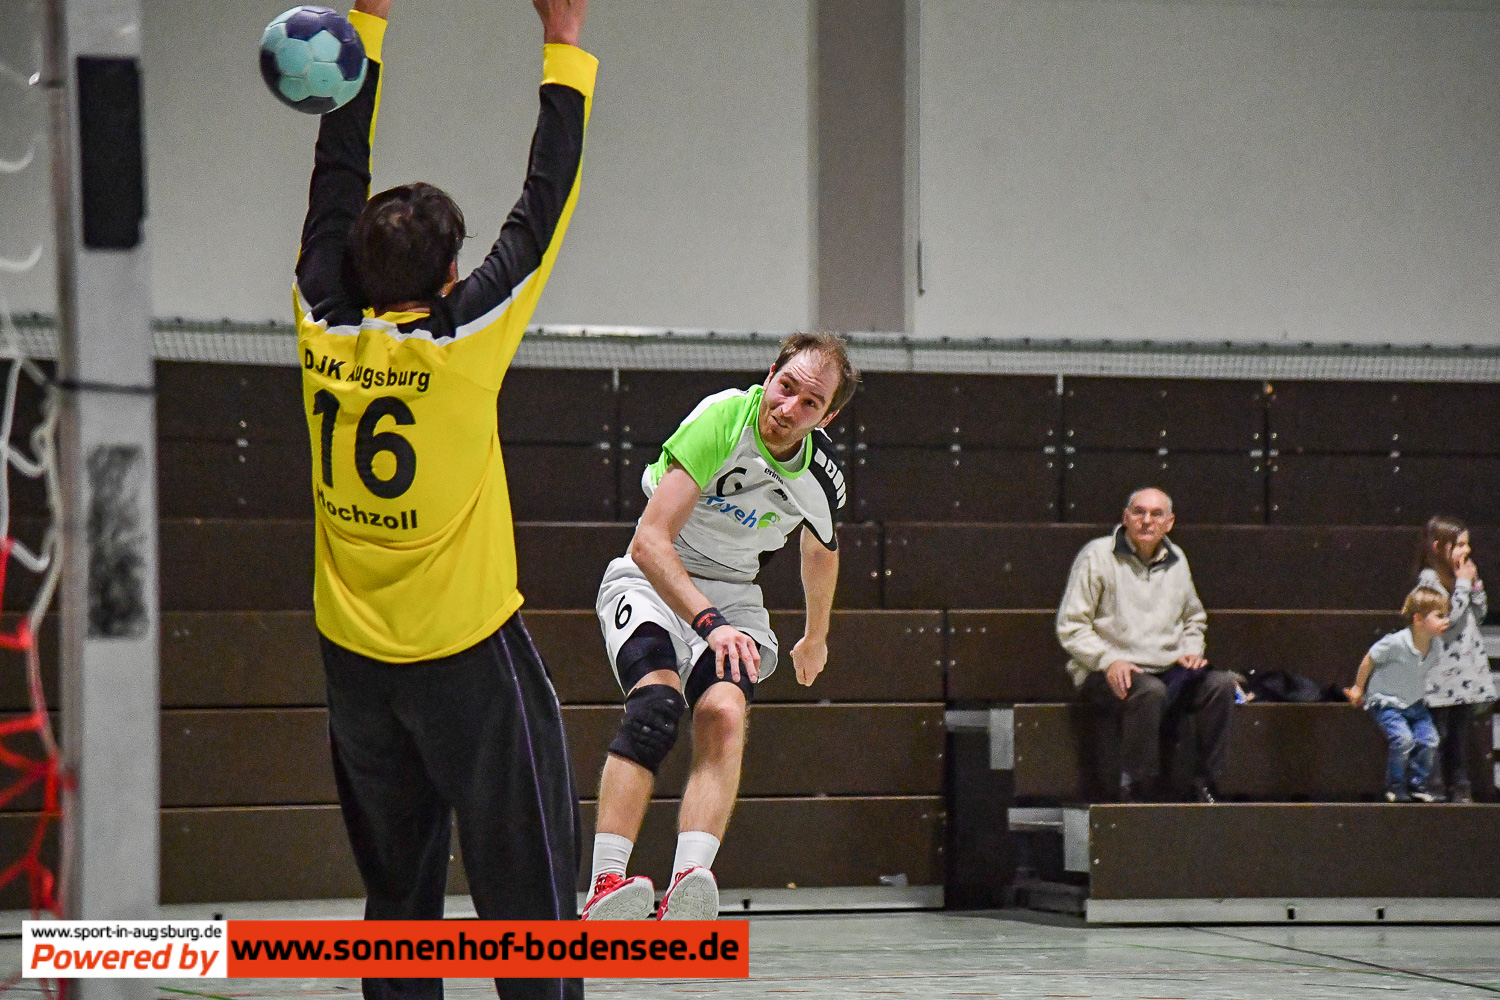 Handball in Augsburg DSC 2900